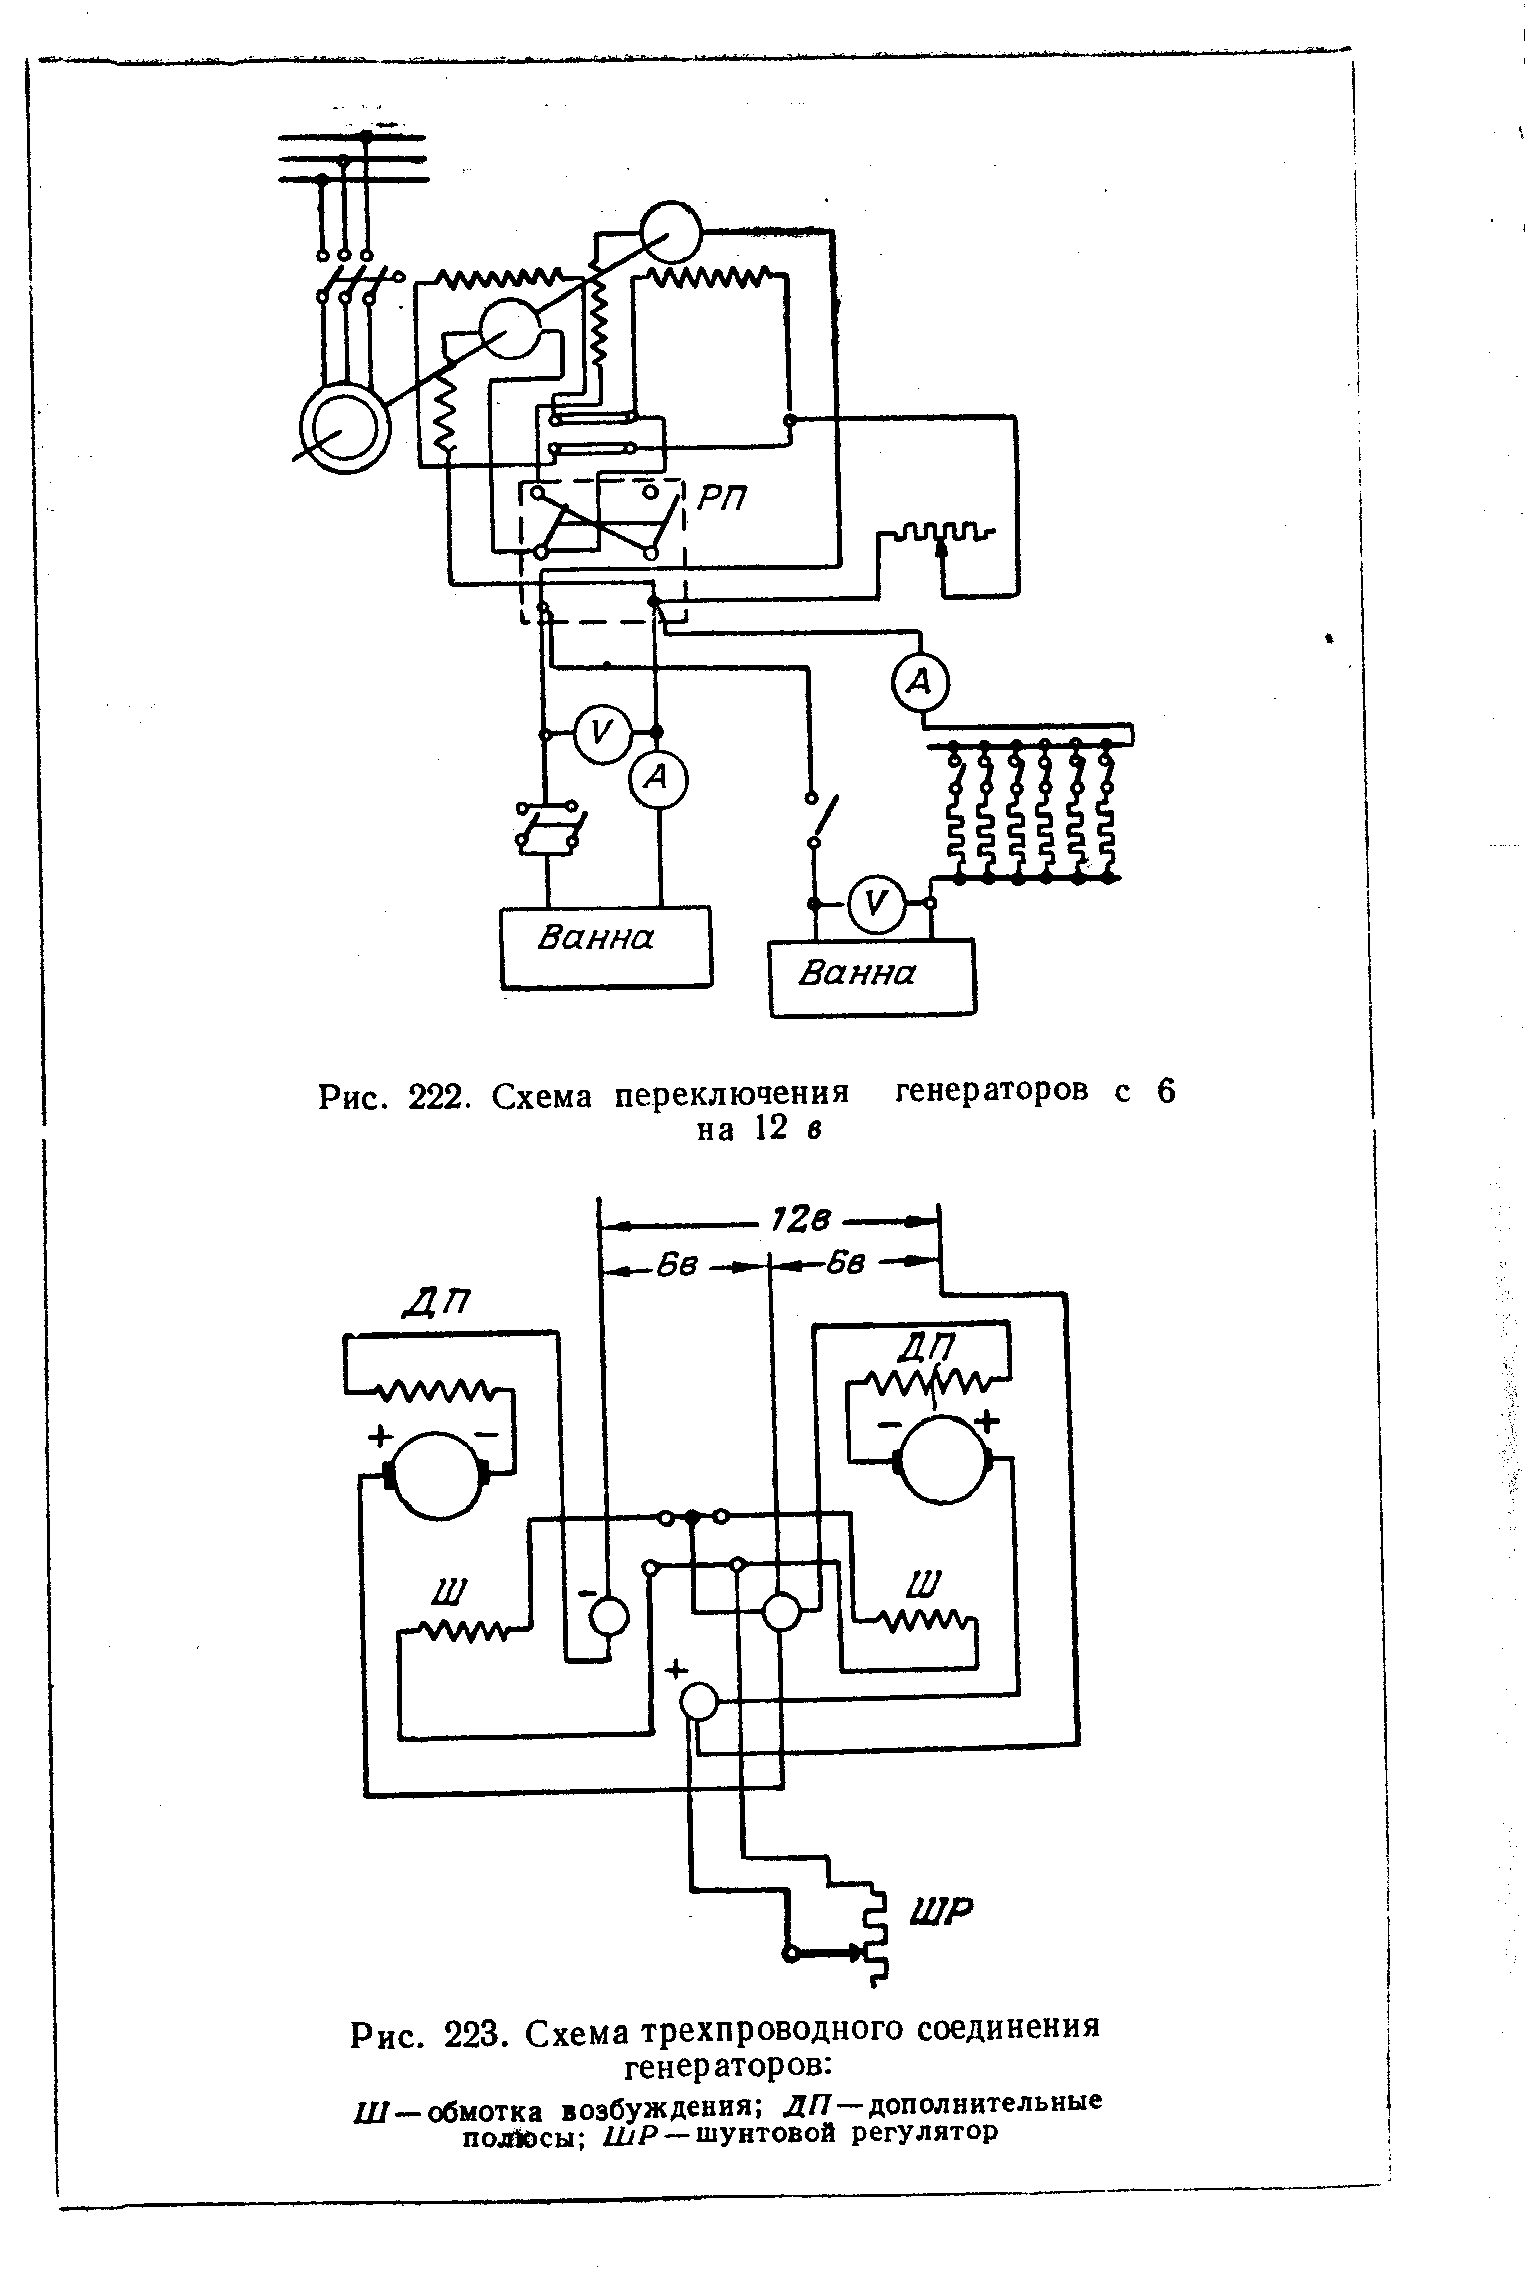 Рис. 223. Схема трехпроводного соединения генераторов 
